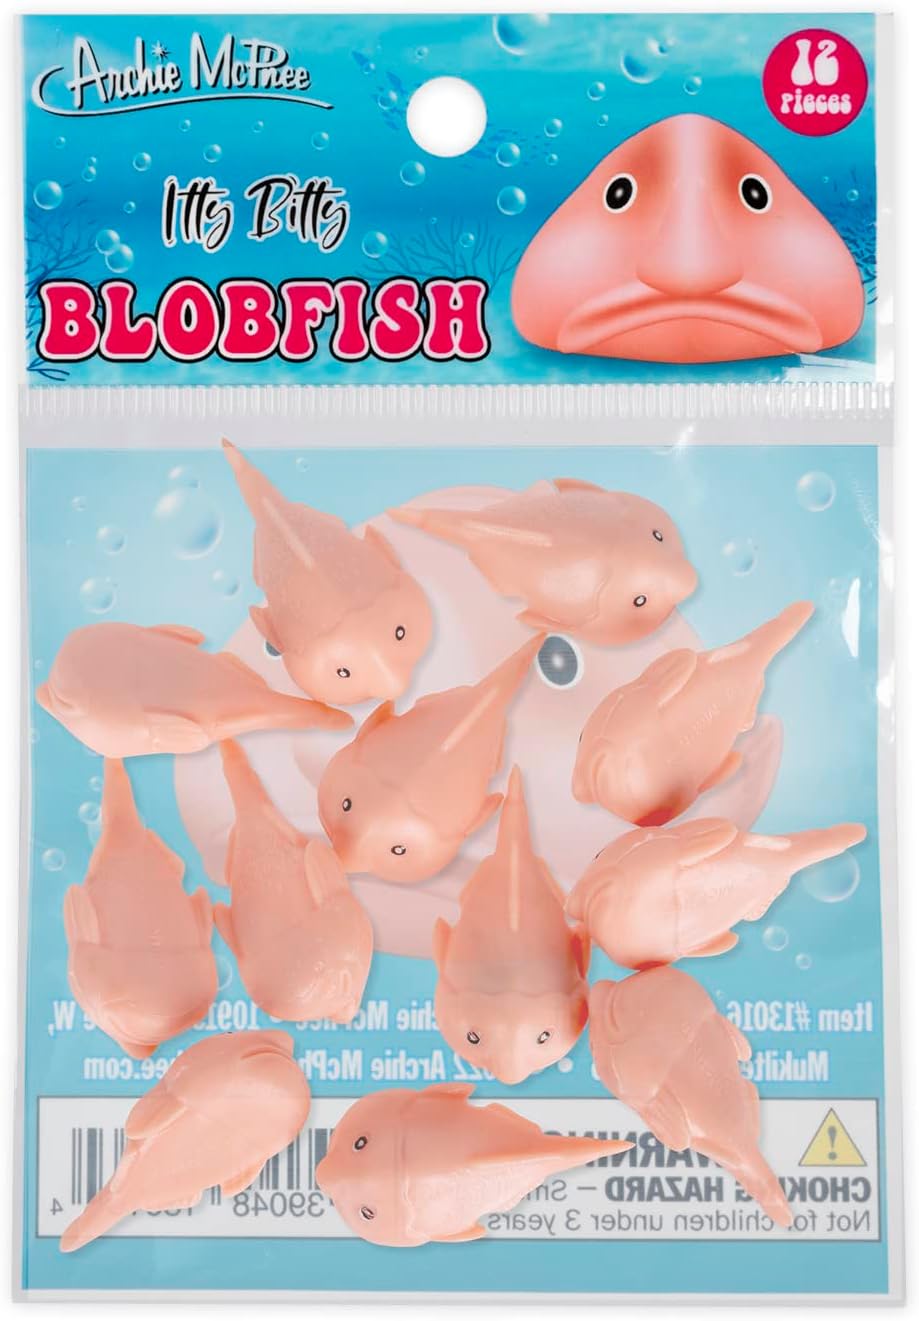 Itty Bitty Blobfish